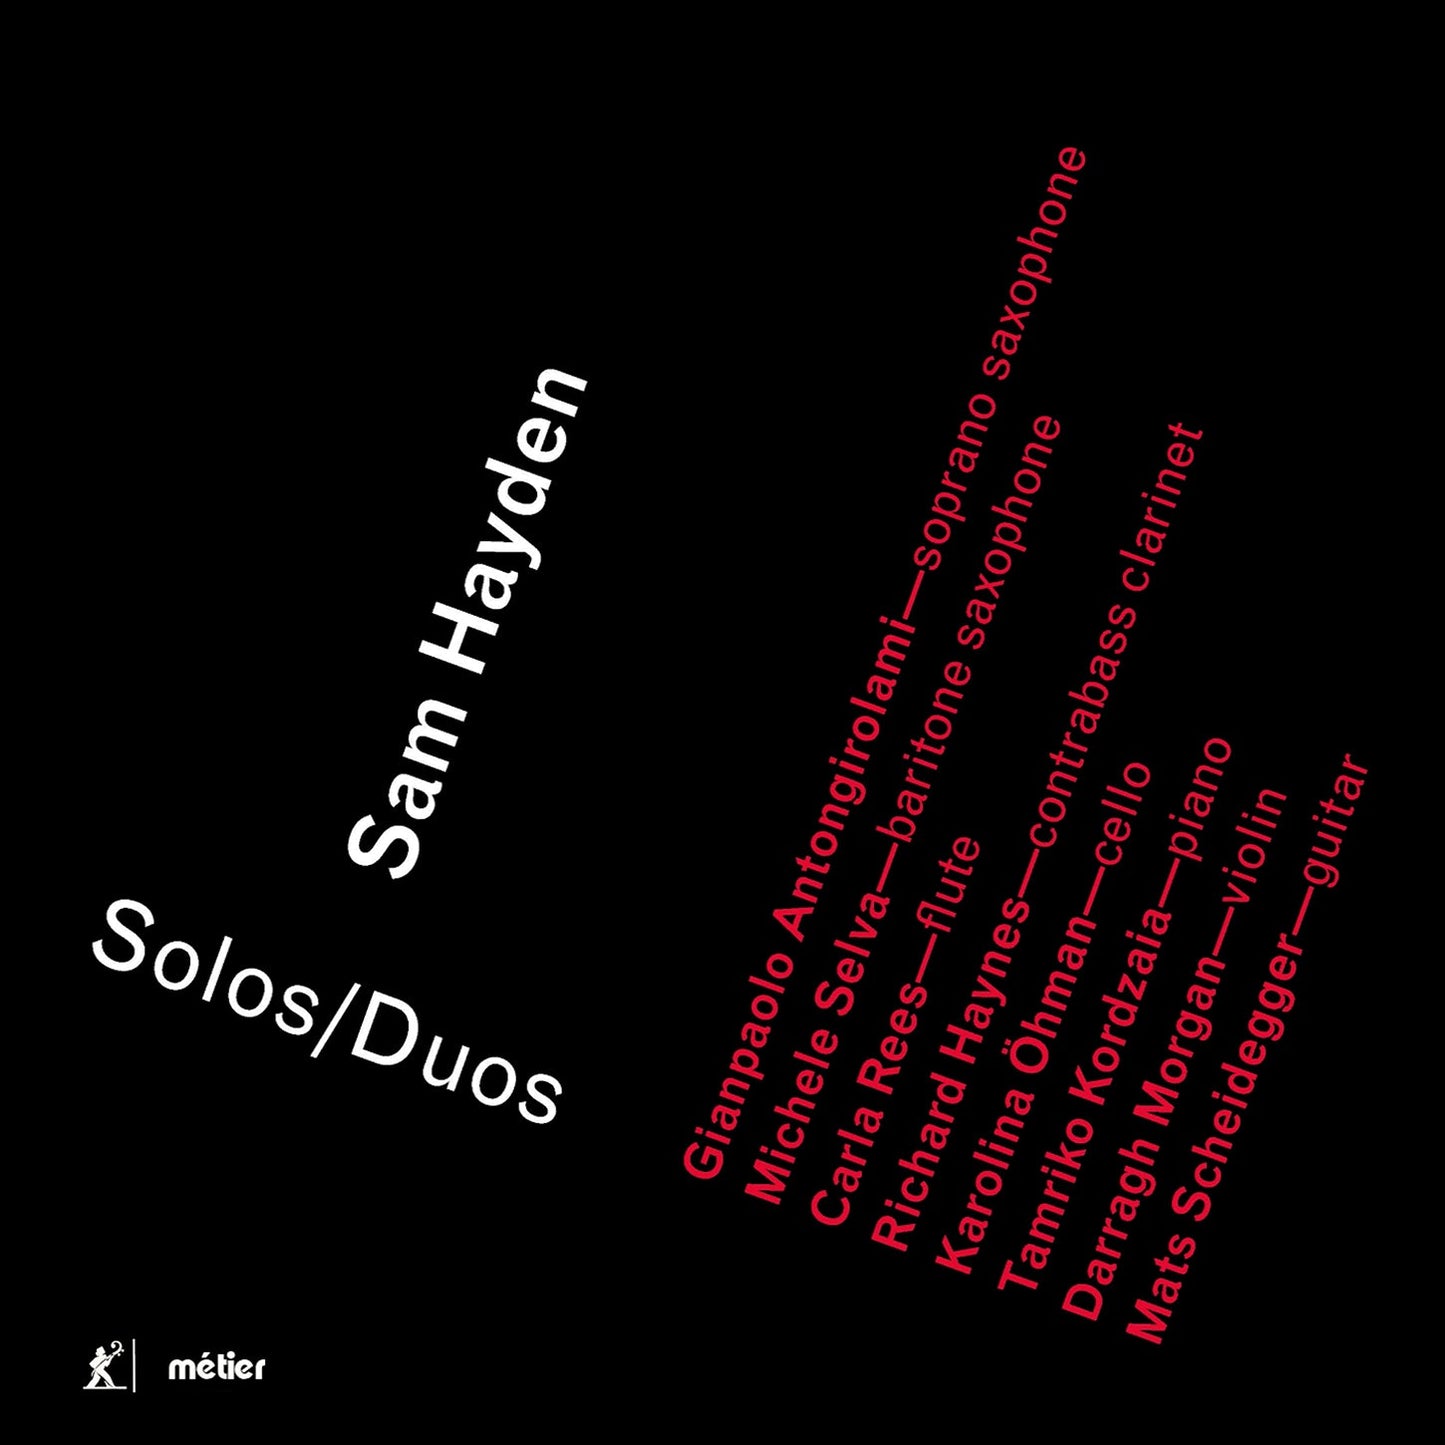 Hayden: Solos/Duos